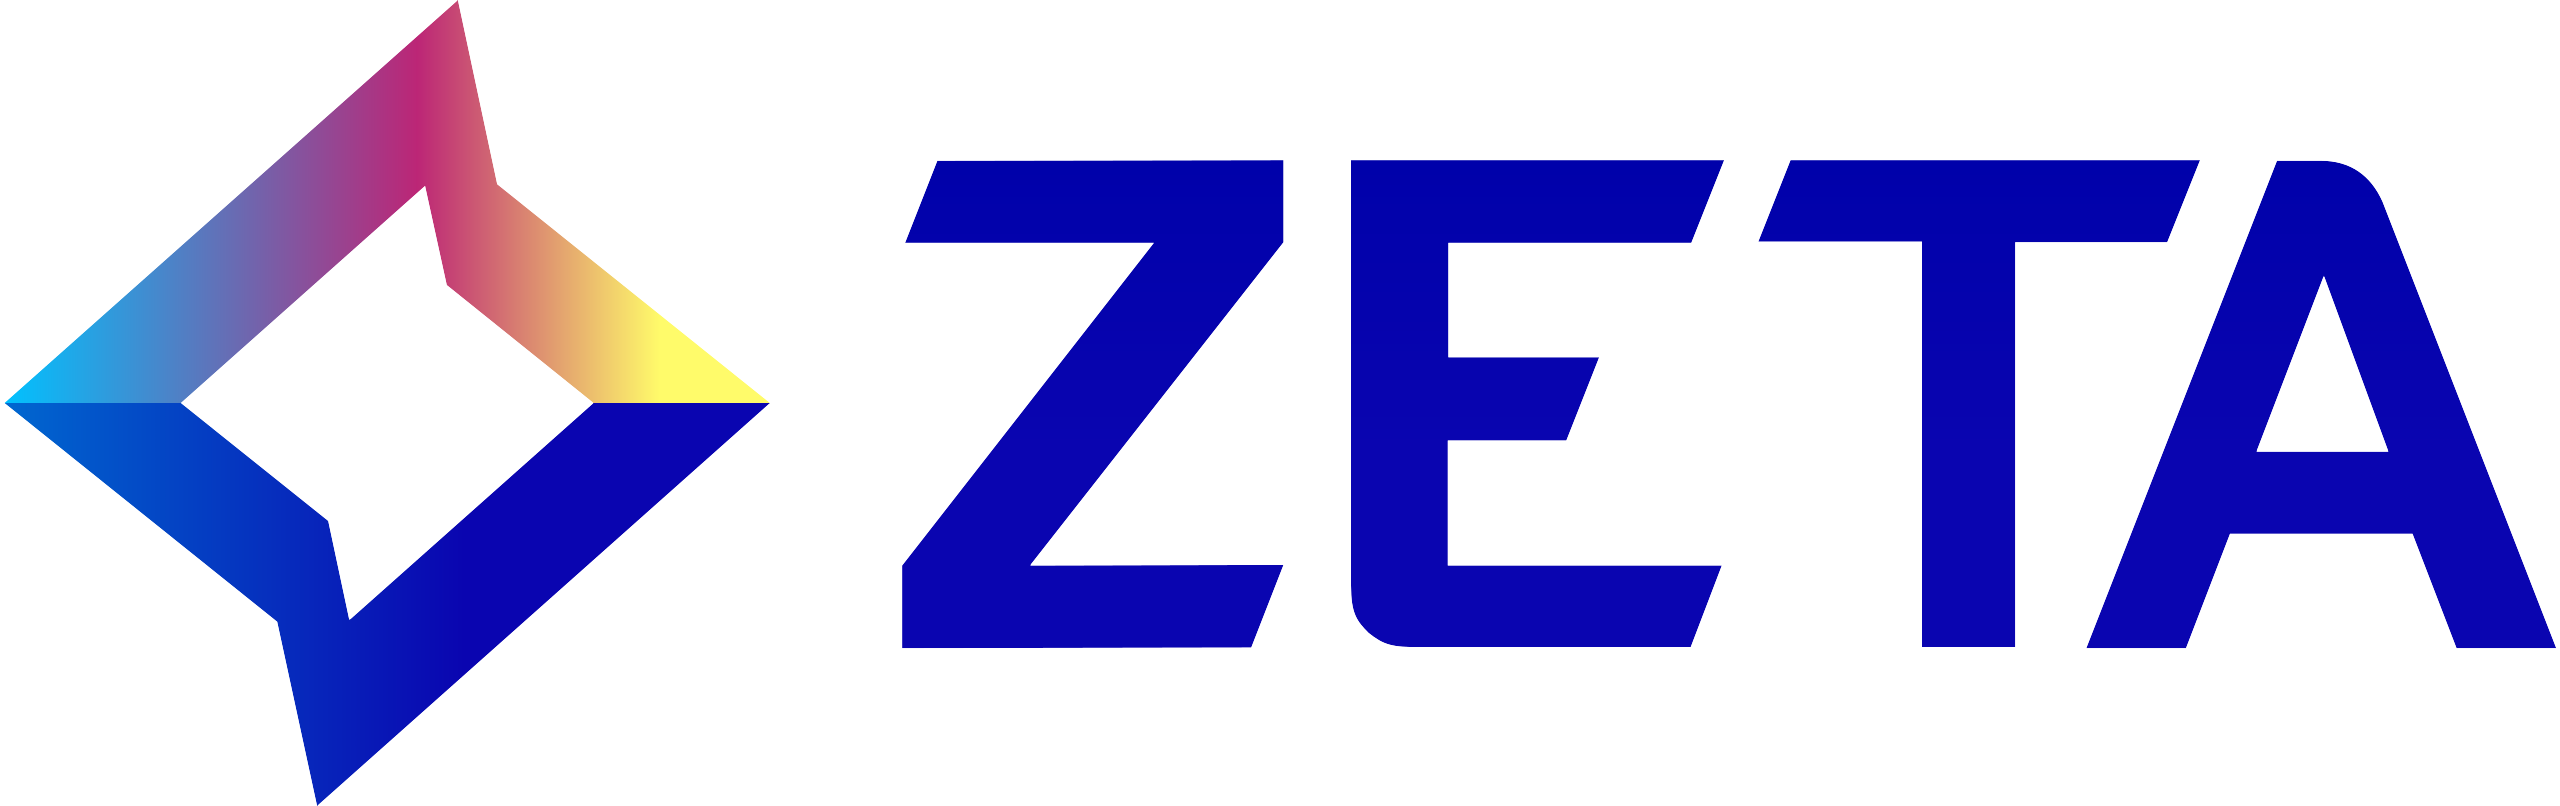 Zeta Global partners with Exatom